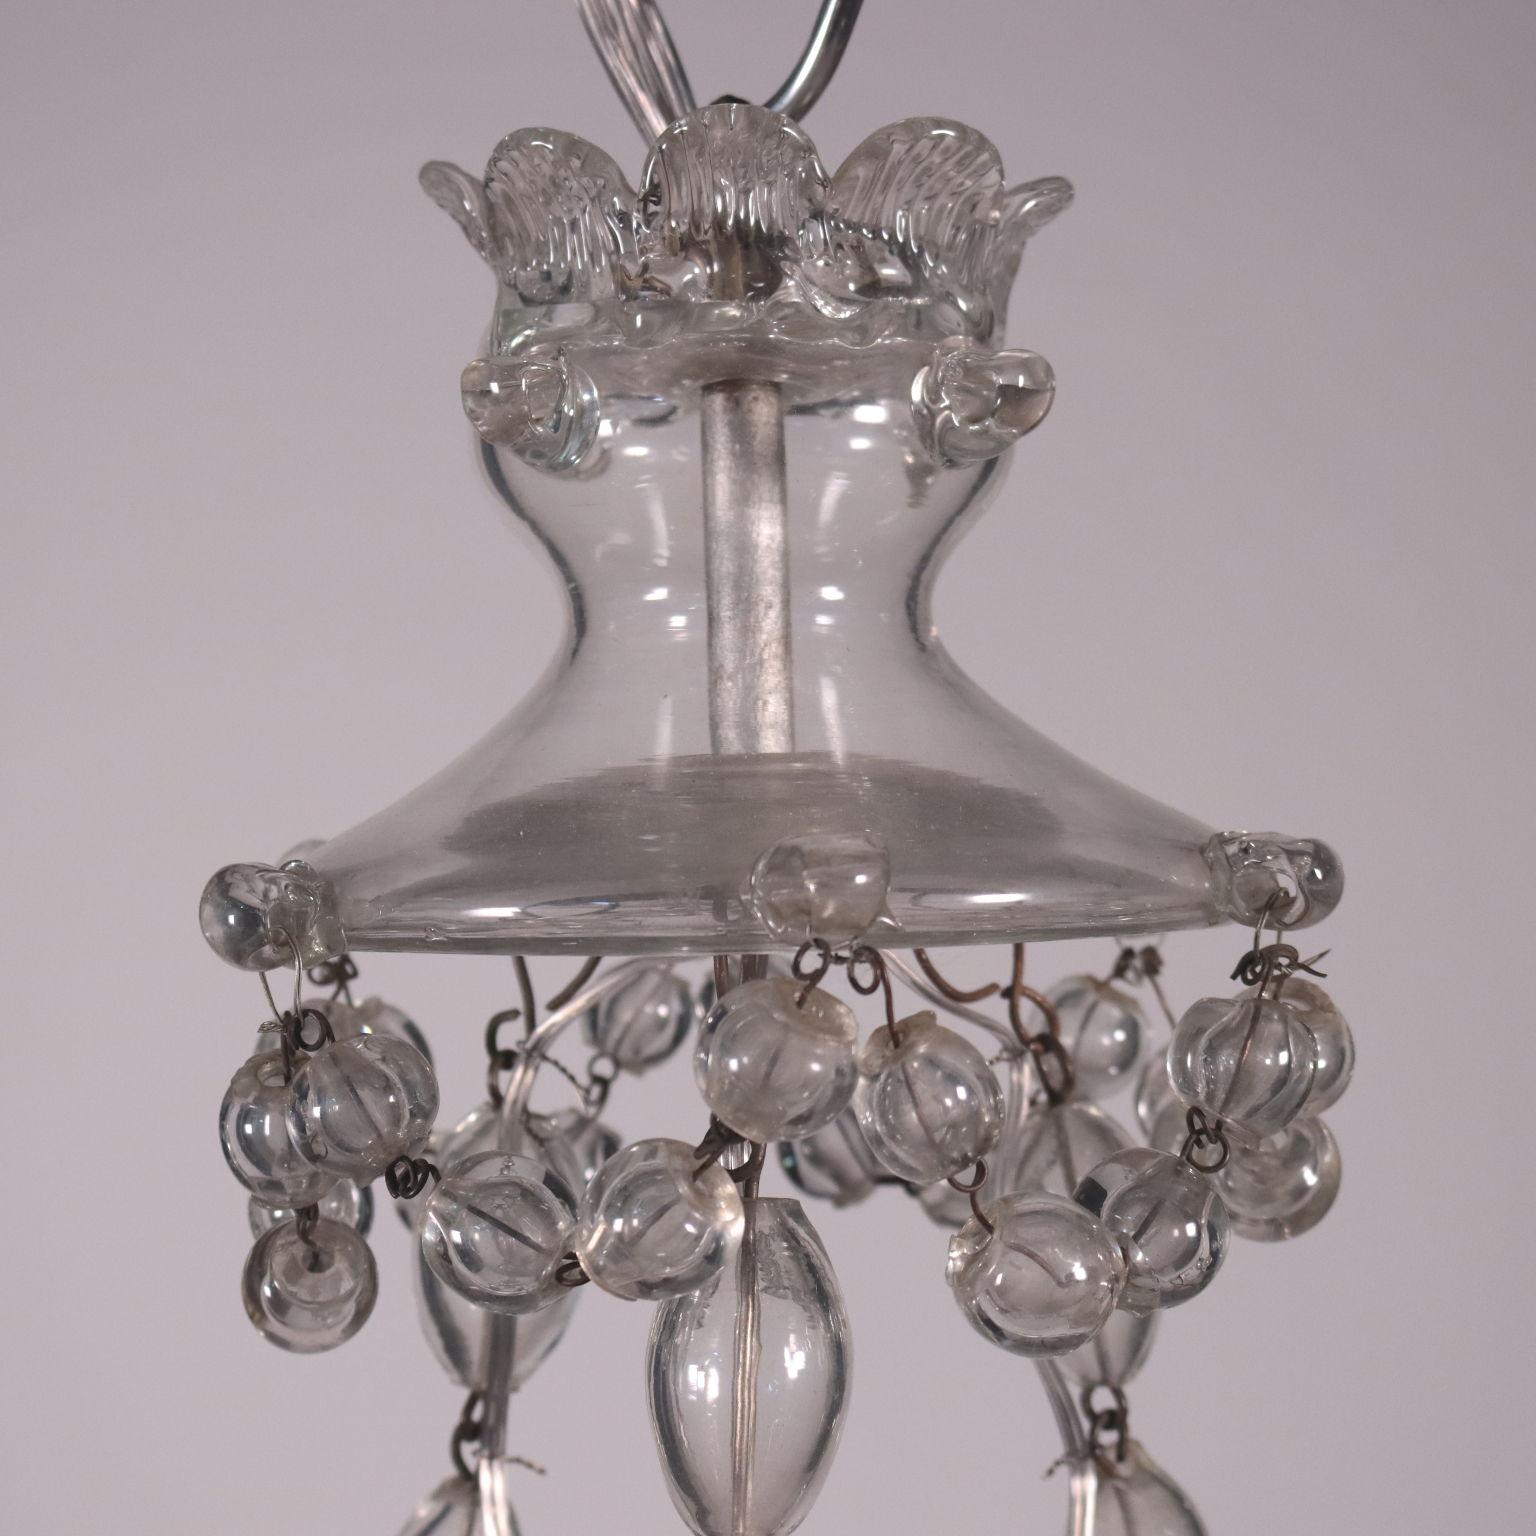 Kronleuchter aus Glas Spanien, spätes 19. Jahrhundert (Spanisch)